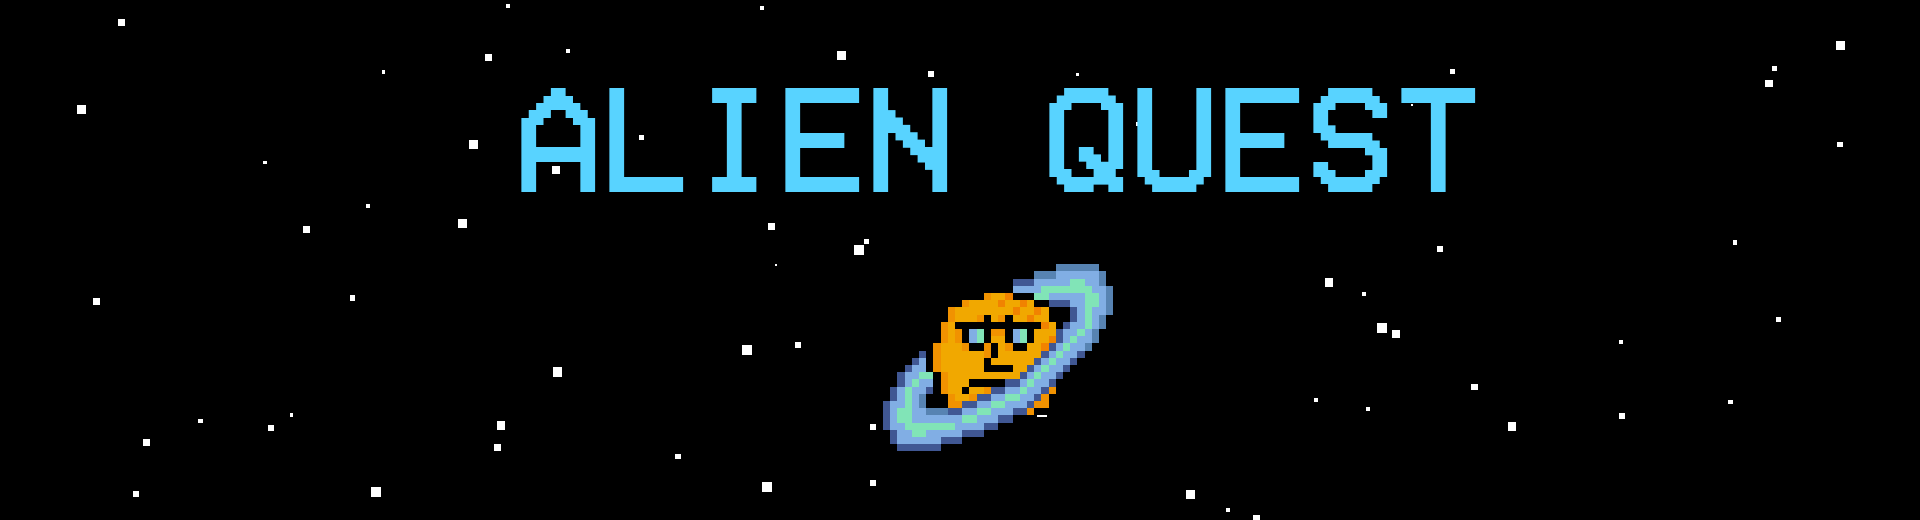 Alien Quest By Eawell Nom1989